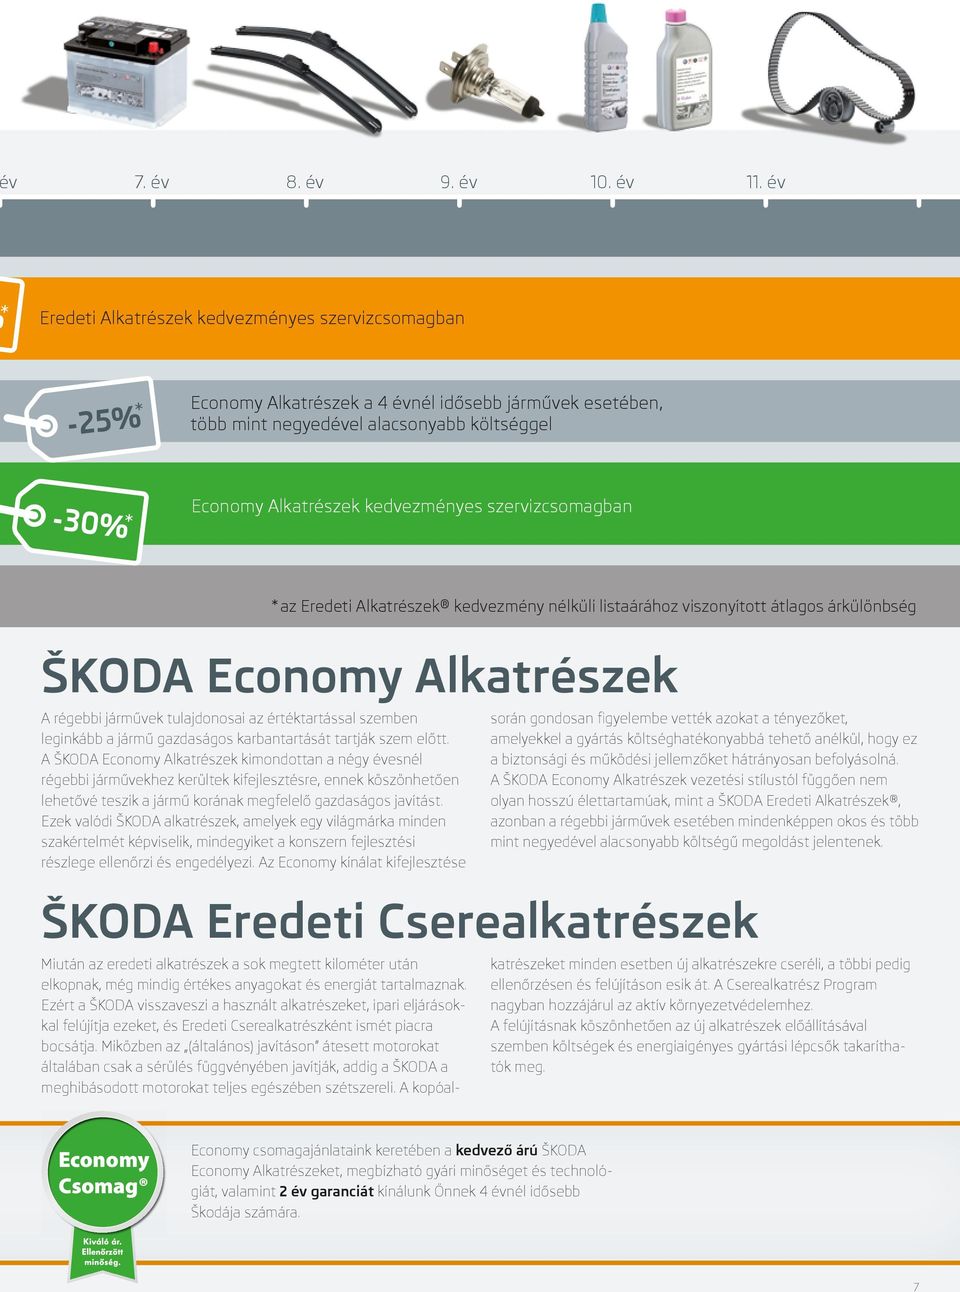 kedvezményes szervizcsomagban ŠKODA Economy Alkatrészek A régebbi járművek tulajdonosai az értéktartással szemben leginkább a jármű gazdaságos karbantartását tartják szem előtt.